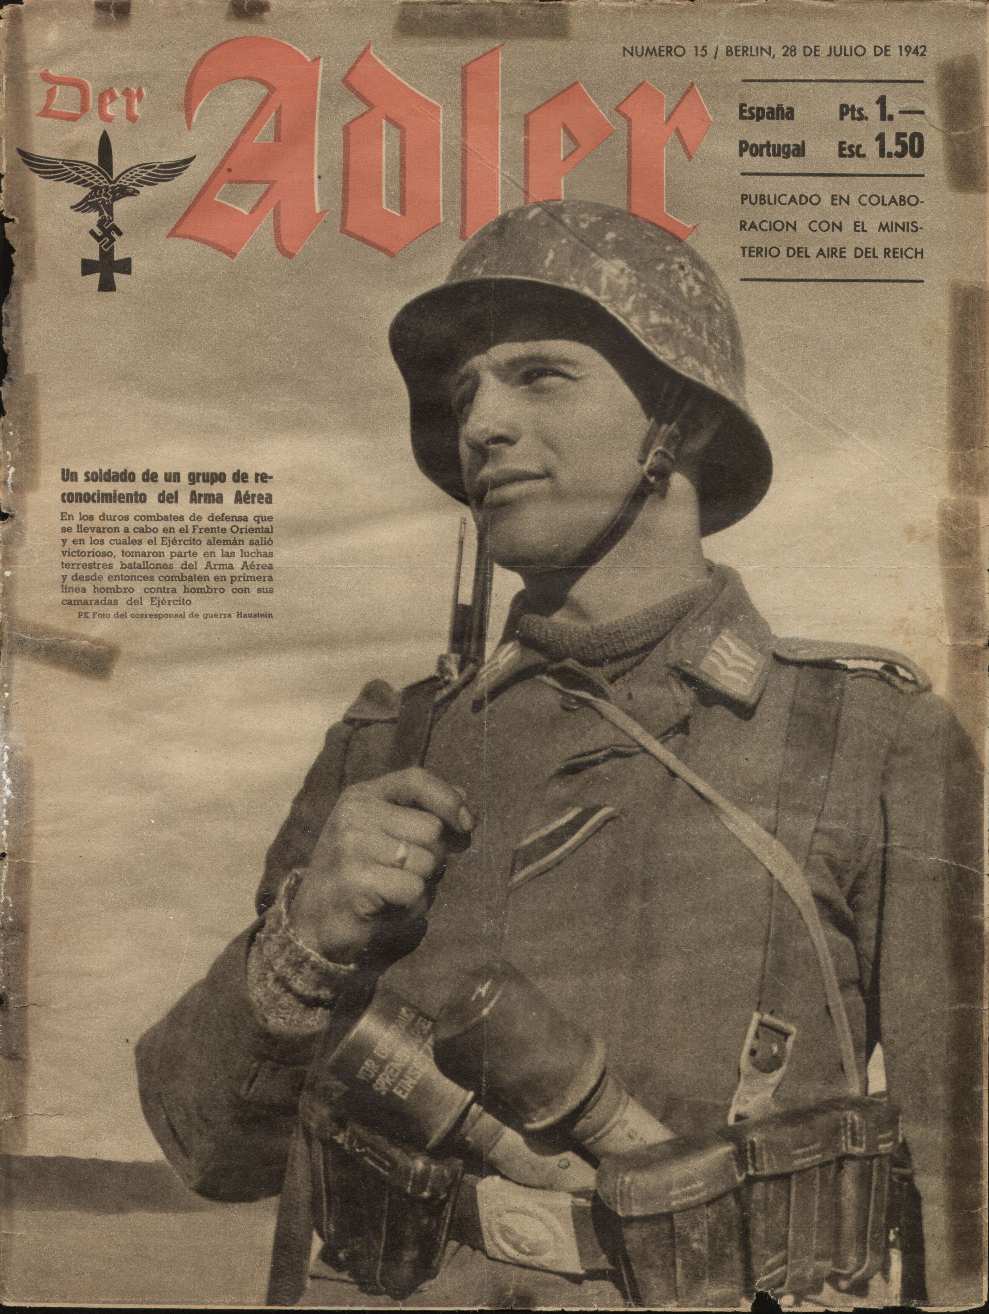 Российский вермахт. Der Adler журнал. Die Wehrmacht журнал 1942. Журнал Адлер 3 Рейх. Немецкие газеты времен войны.